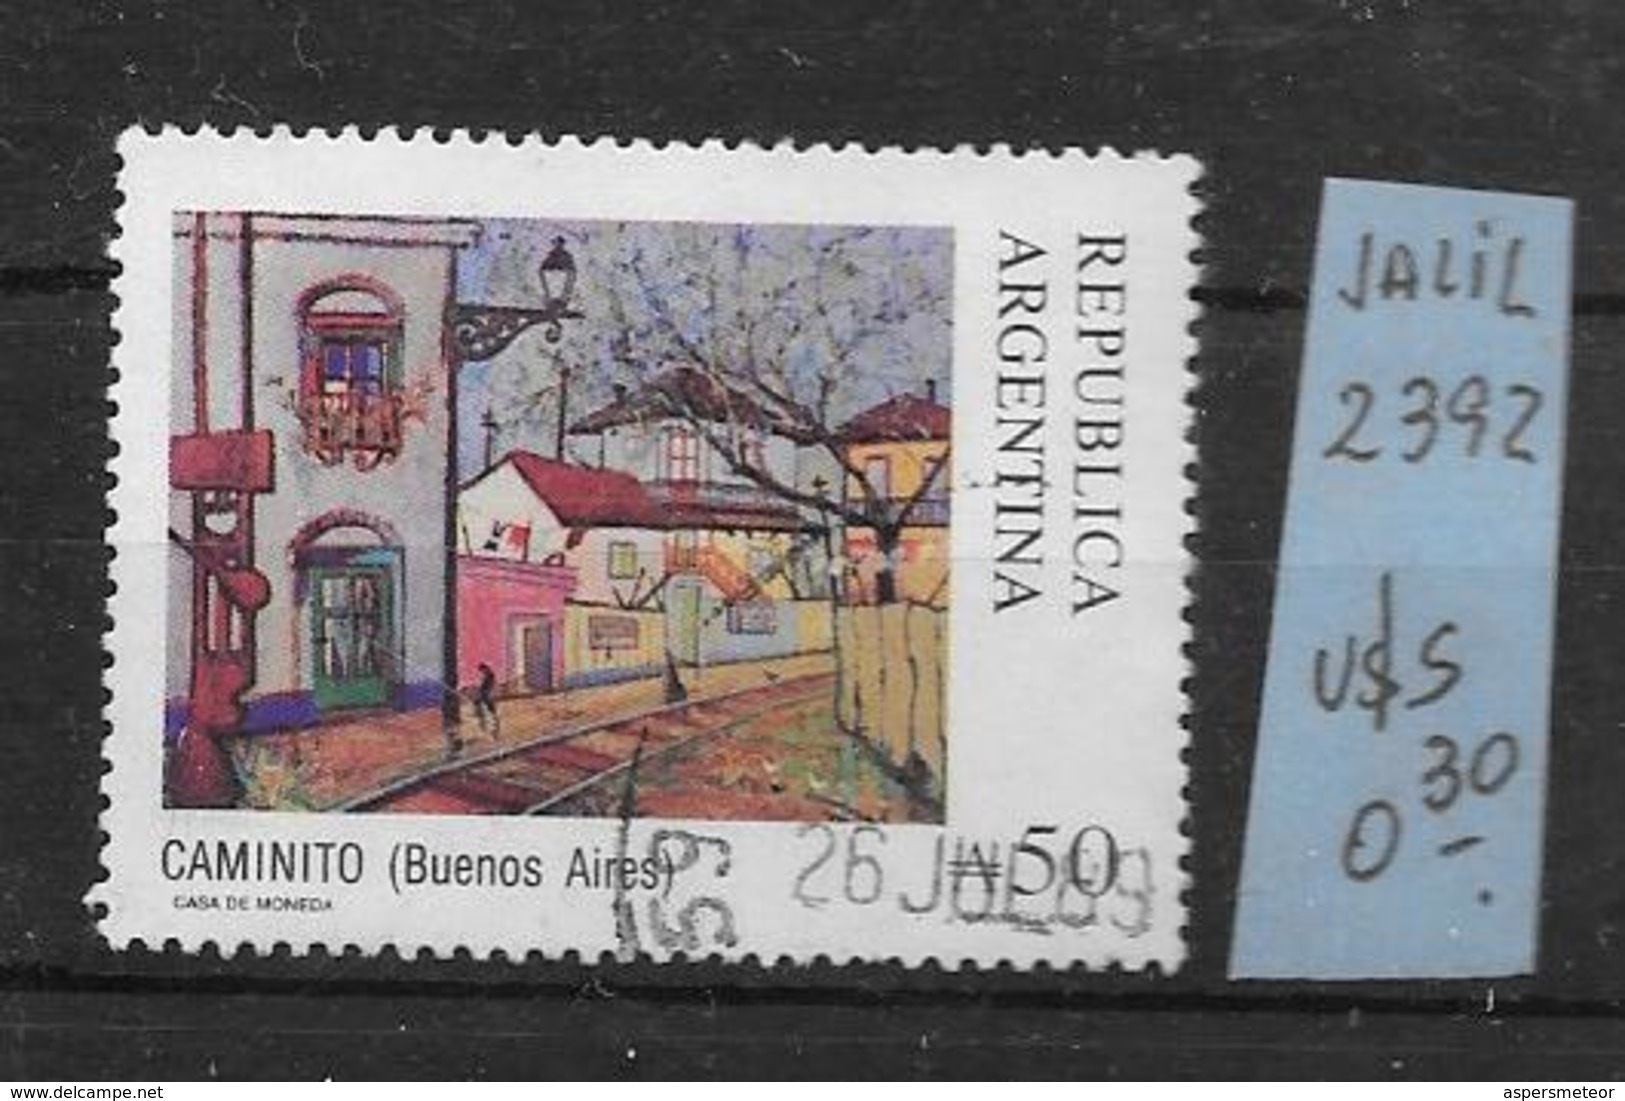 ARGENTINA ARGENTINE JALIL GOTTIG NR. 2392 OBLITERE AÑO 1988 CALLE CAMINITO BARRIO DE LA BOCA BUENOS AIRES EVOCA AL CAMIN - Usati